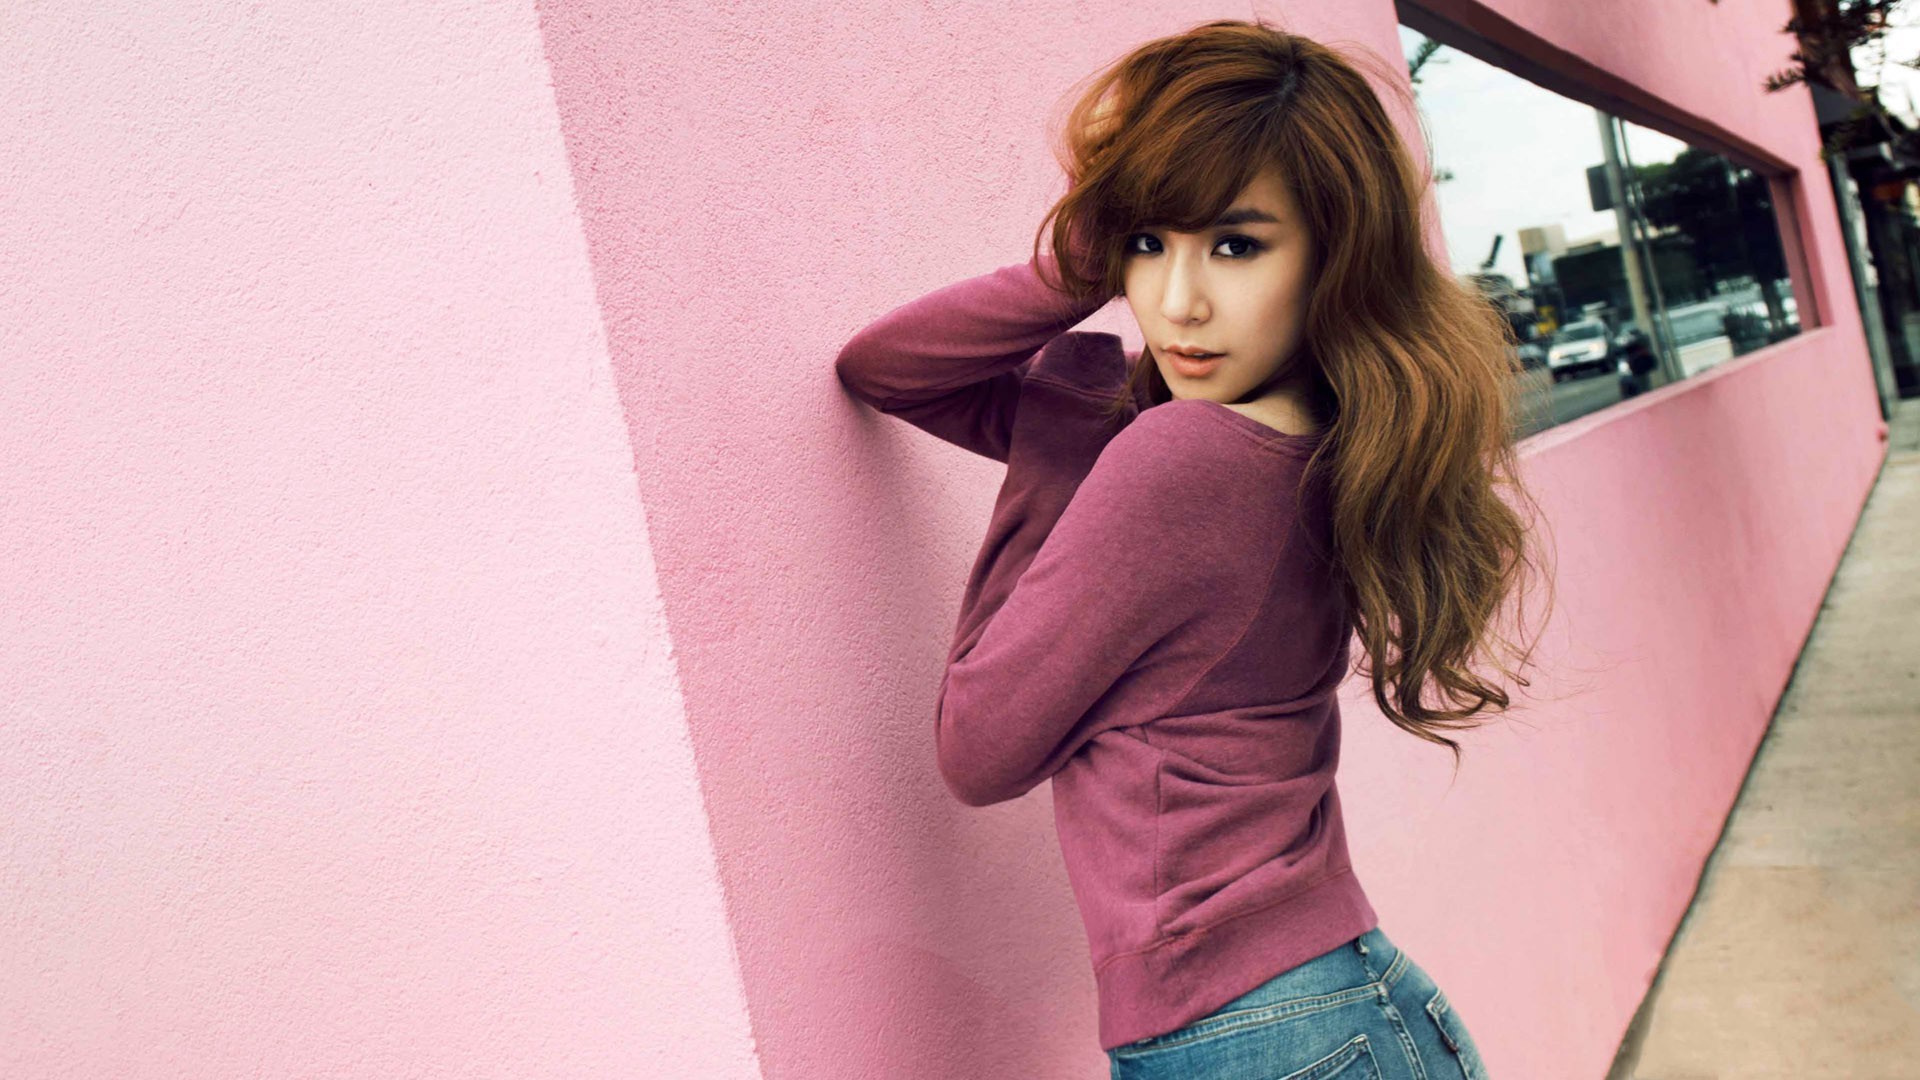 People 1920x1080 SNSD Girls' Generation Asian model musician singer Korean women outdoors urban sweatshirts looking at viewer pink wall dark eyes women